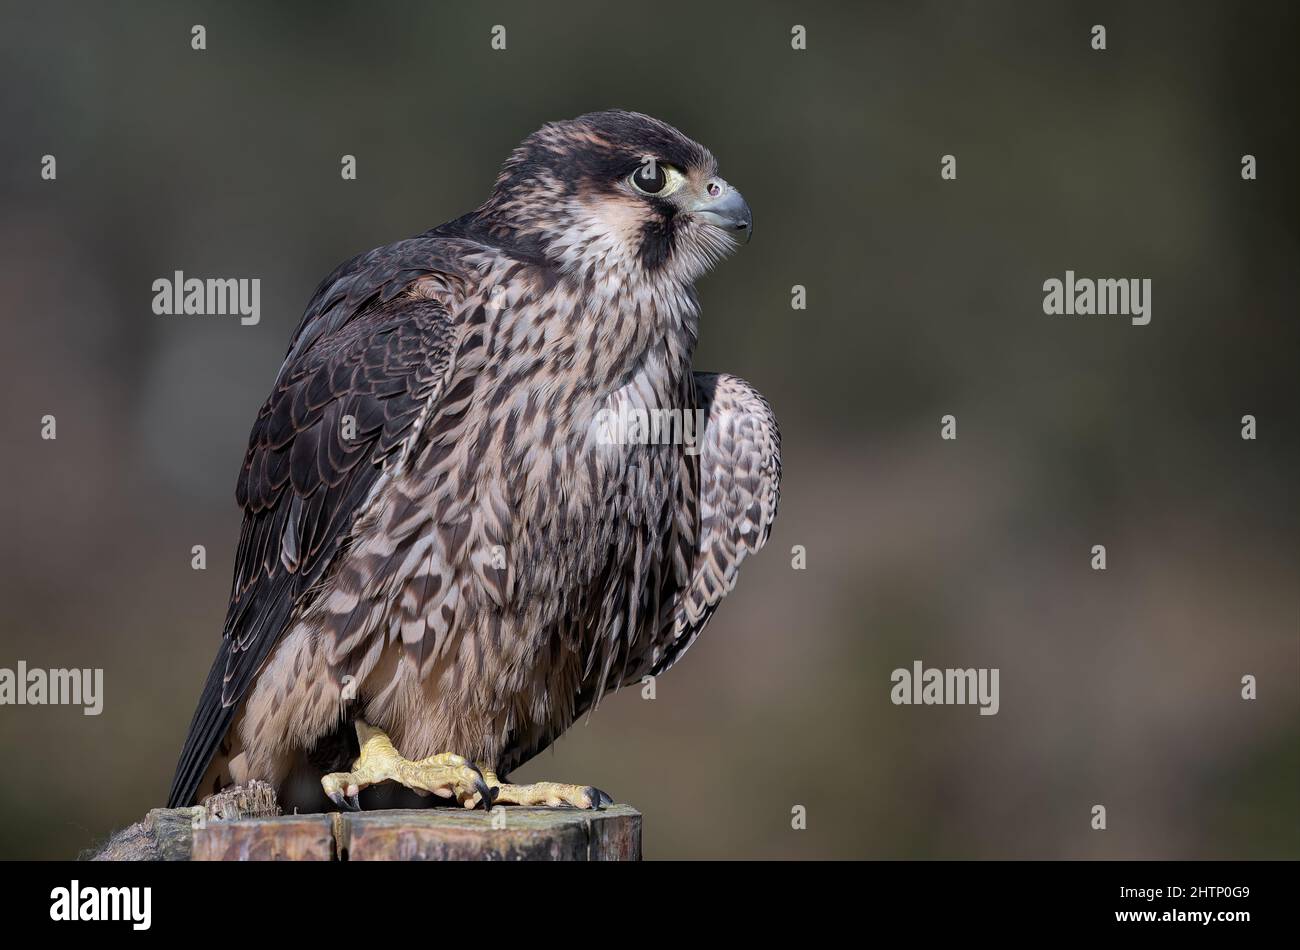 Un retrato de cerca de un halcón peregrino, Falco peregrinus, también conocido como un halcón de pato. Foto de stock